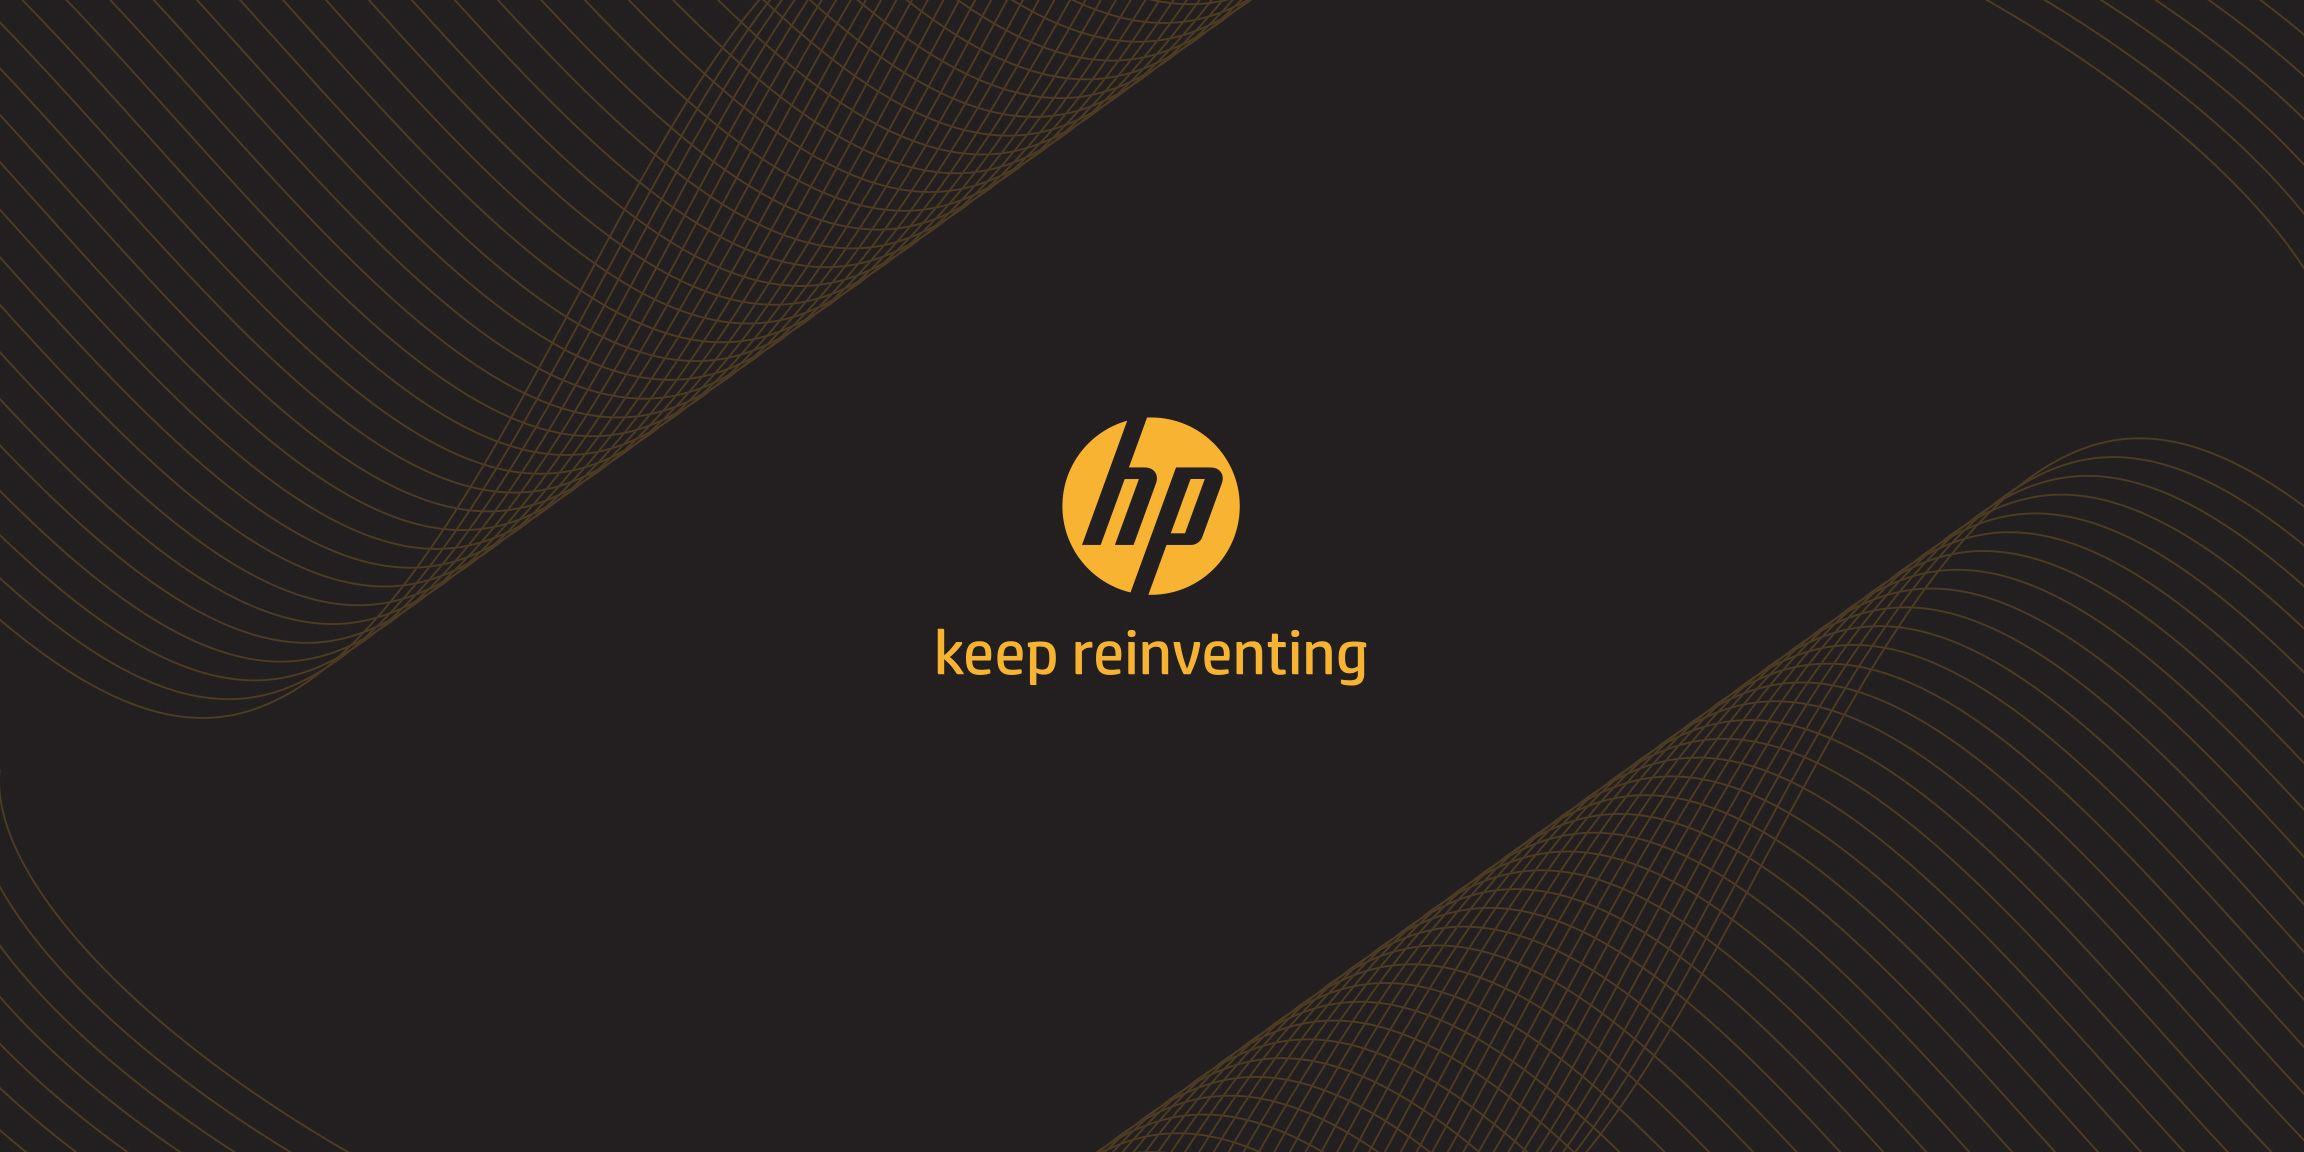 HP Premium Logo - HP Premium Look Book. Jamie Pugliese Graphic Design Portfolio